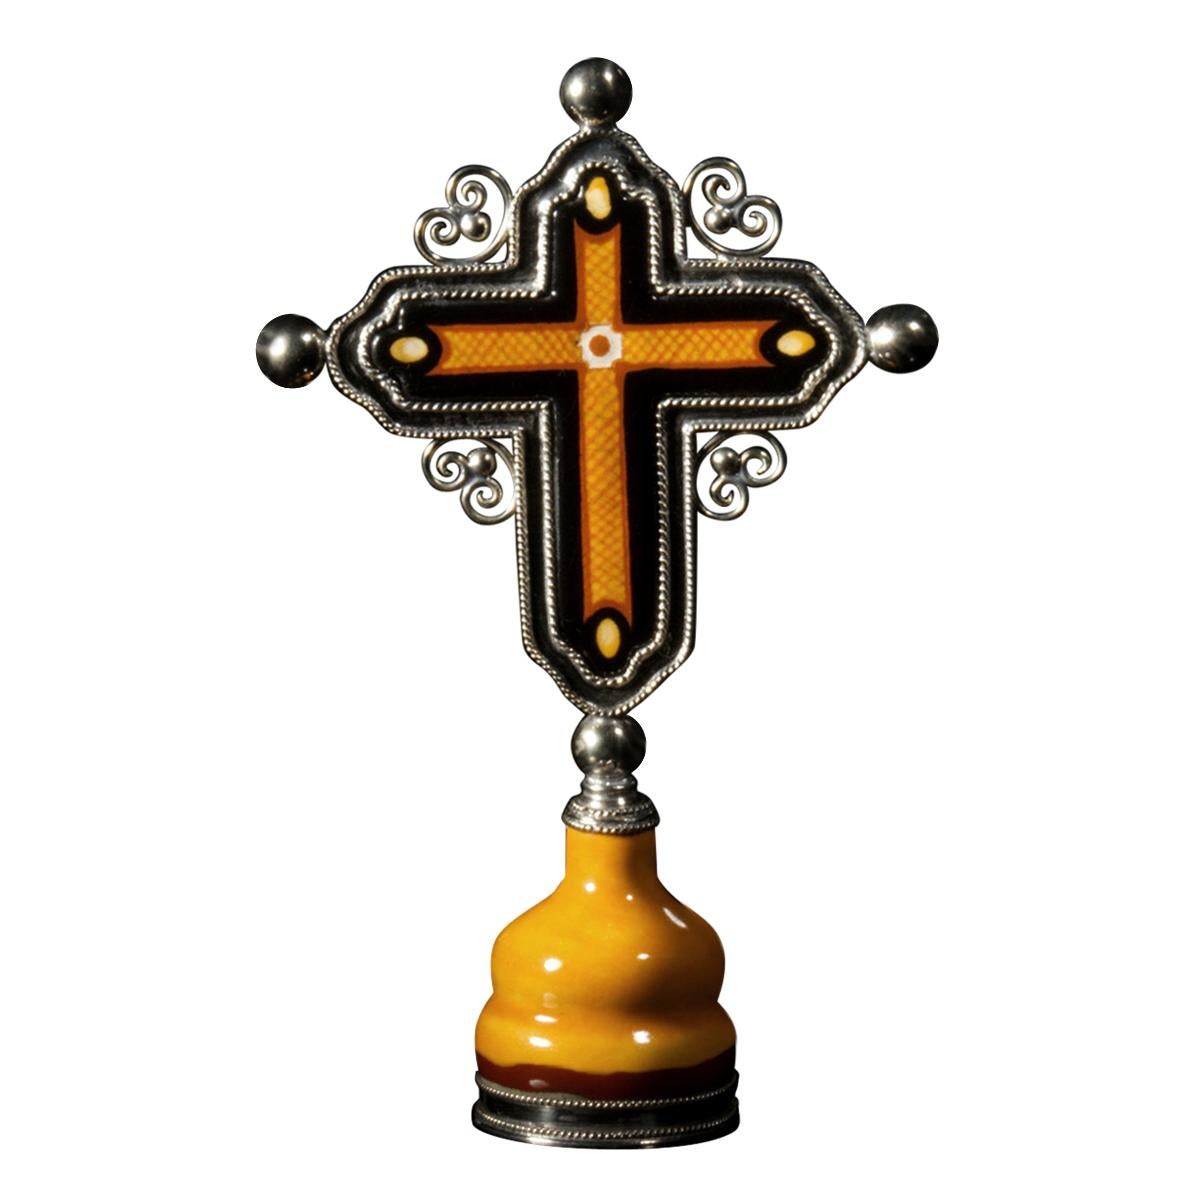 Ceramic and White Metal 'Alpaca' Crucifix with Cerámic 